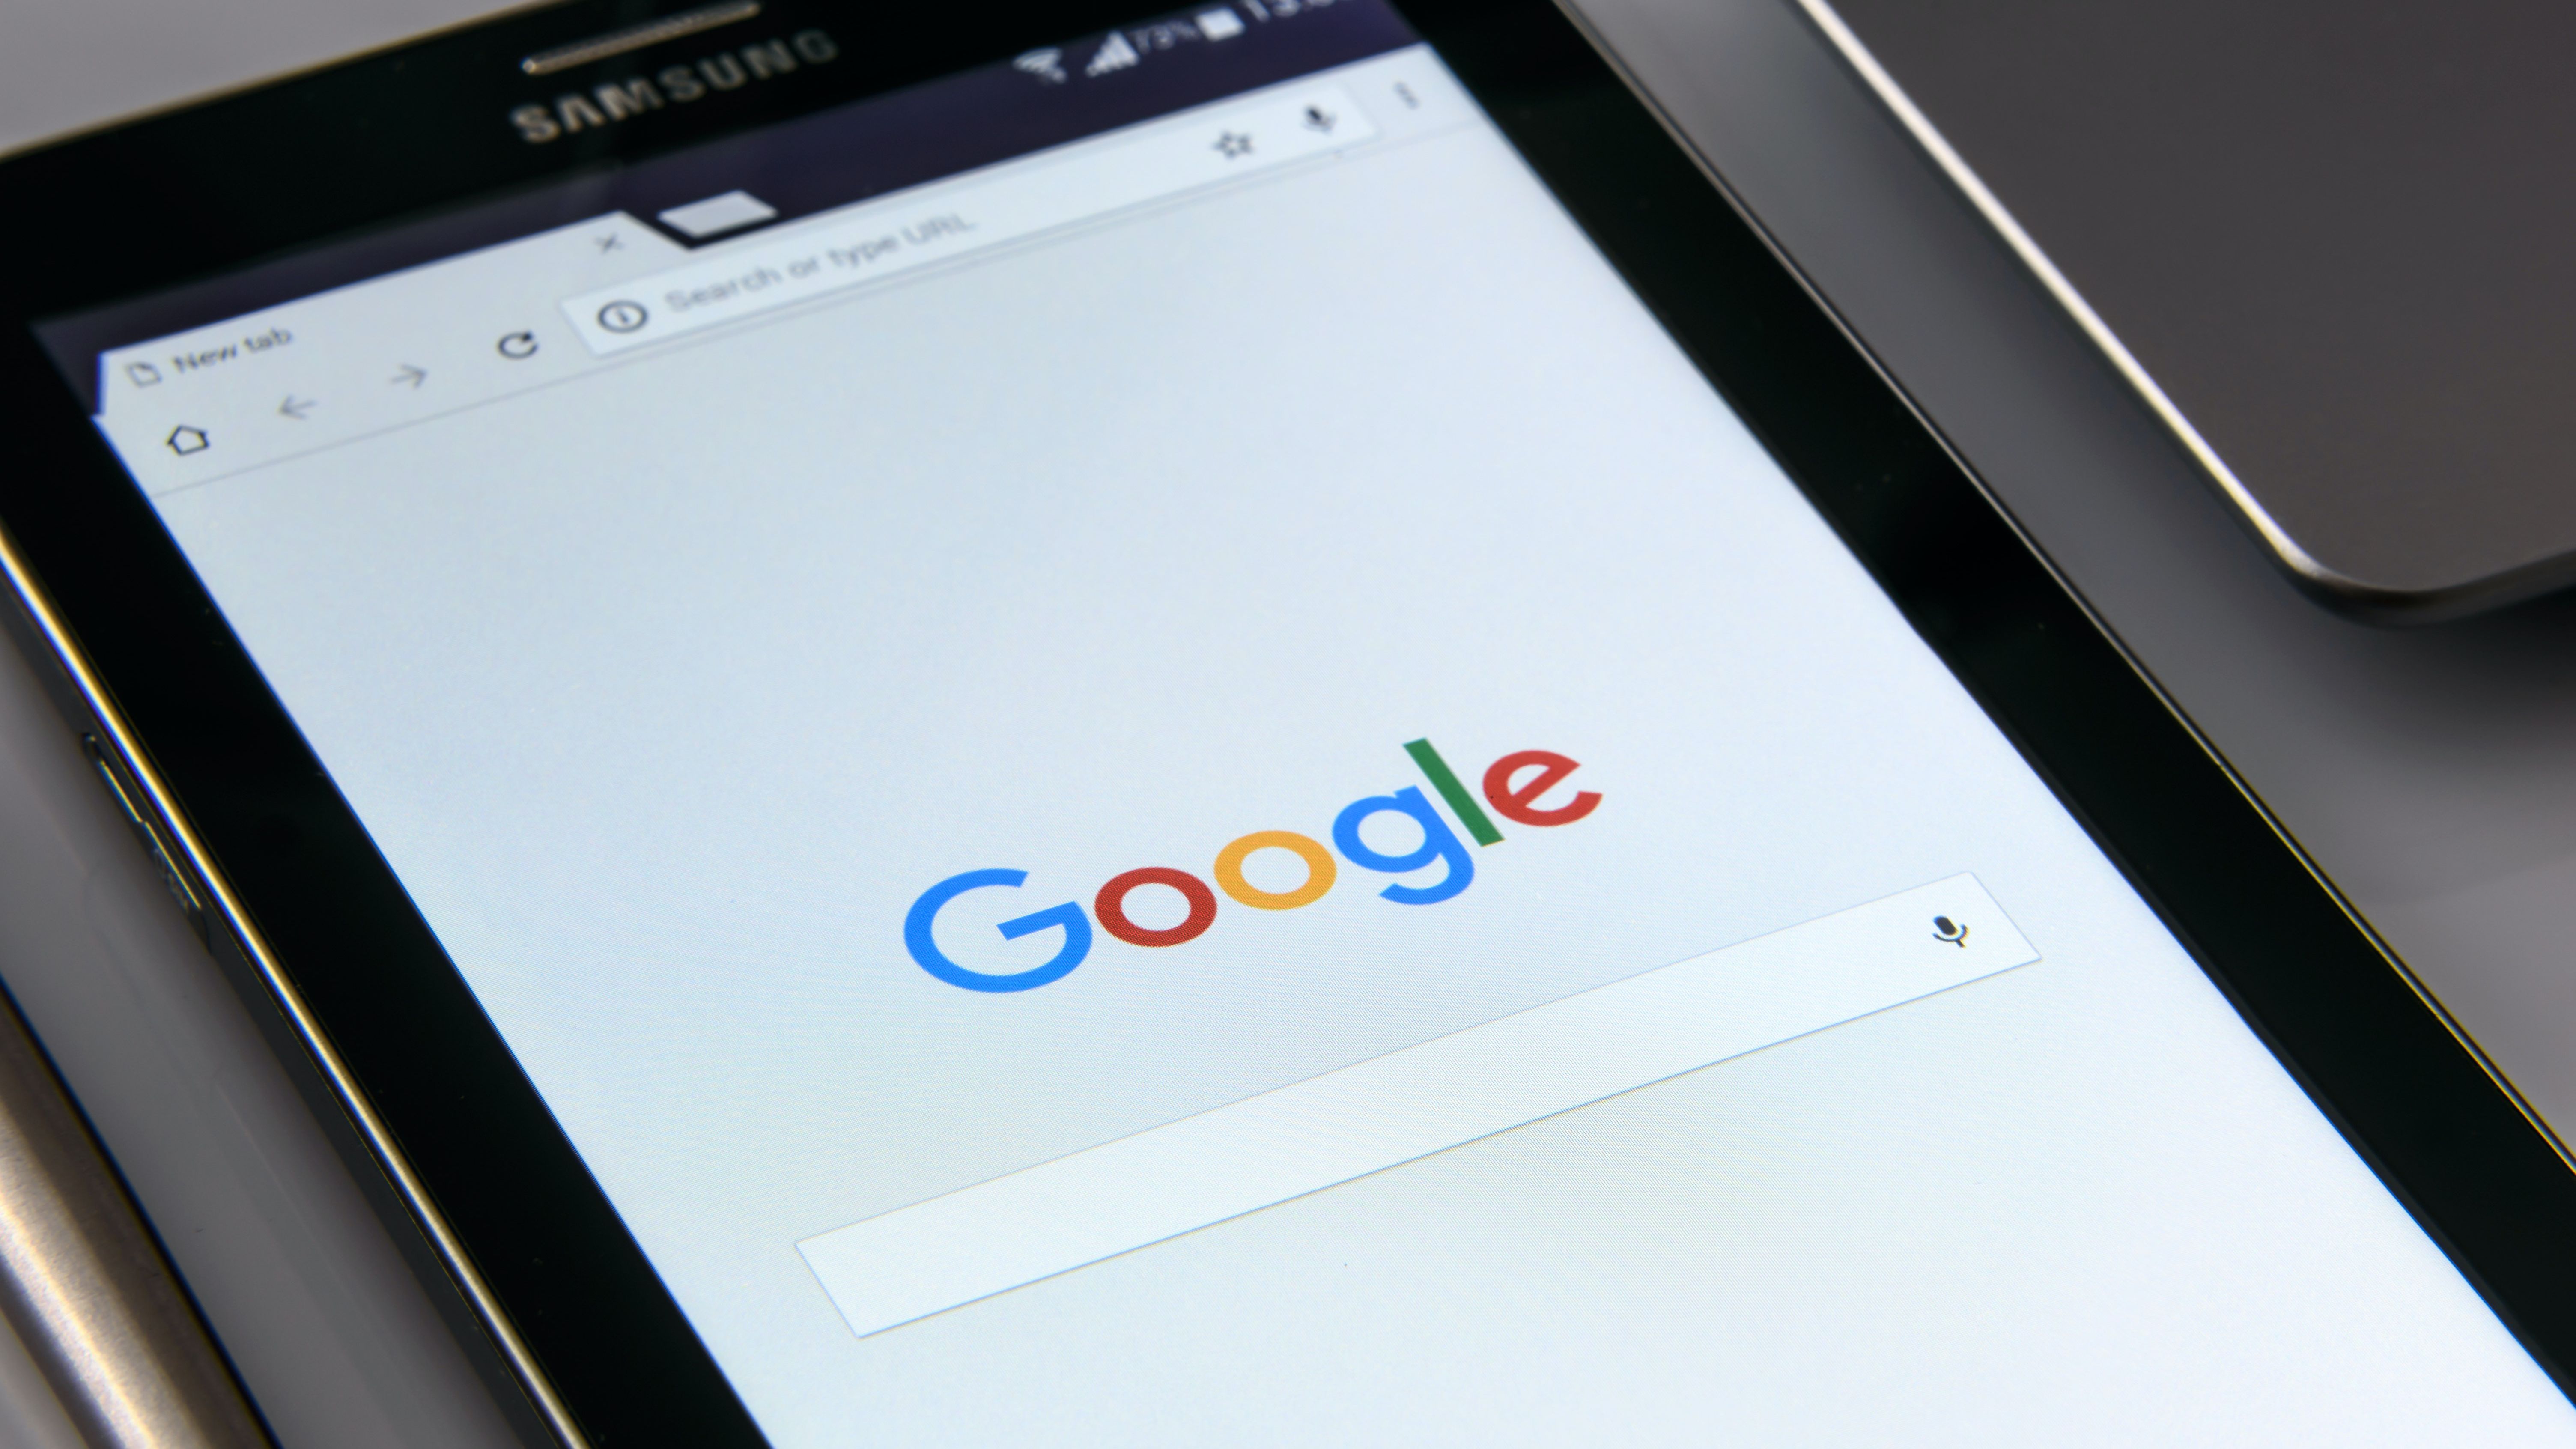 Google lança ferramenta para ajudar a encontrar empregos home office -  Tecnologia e Games - Folha PE